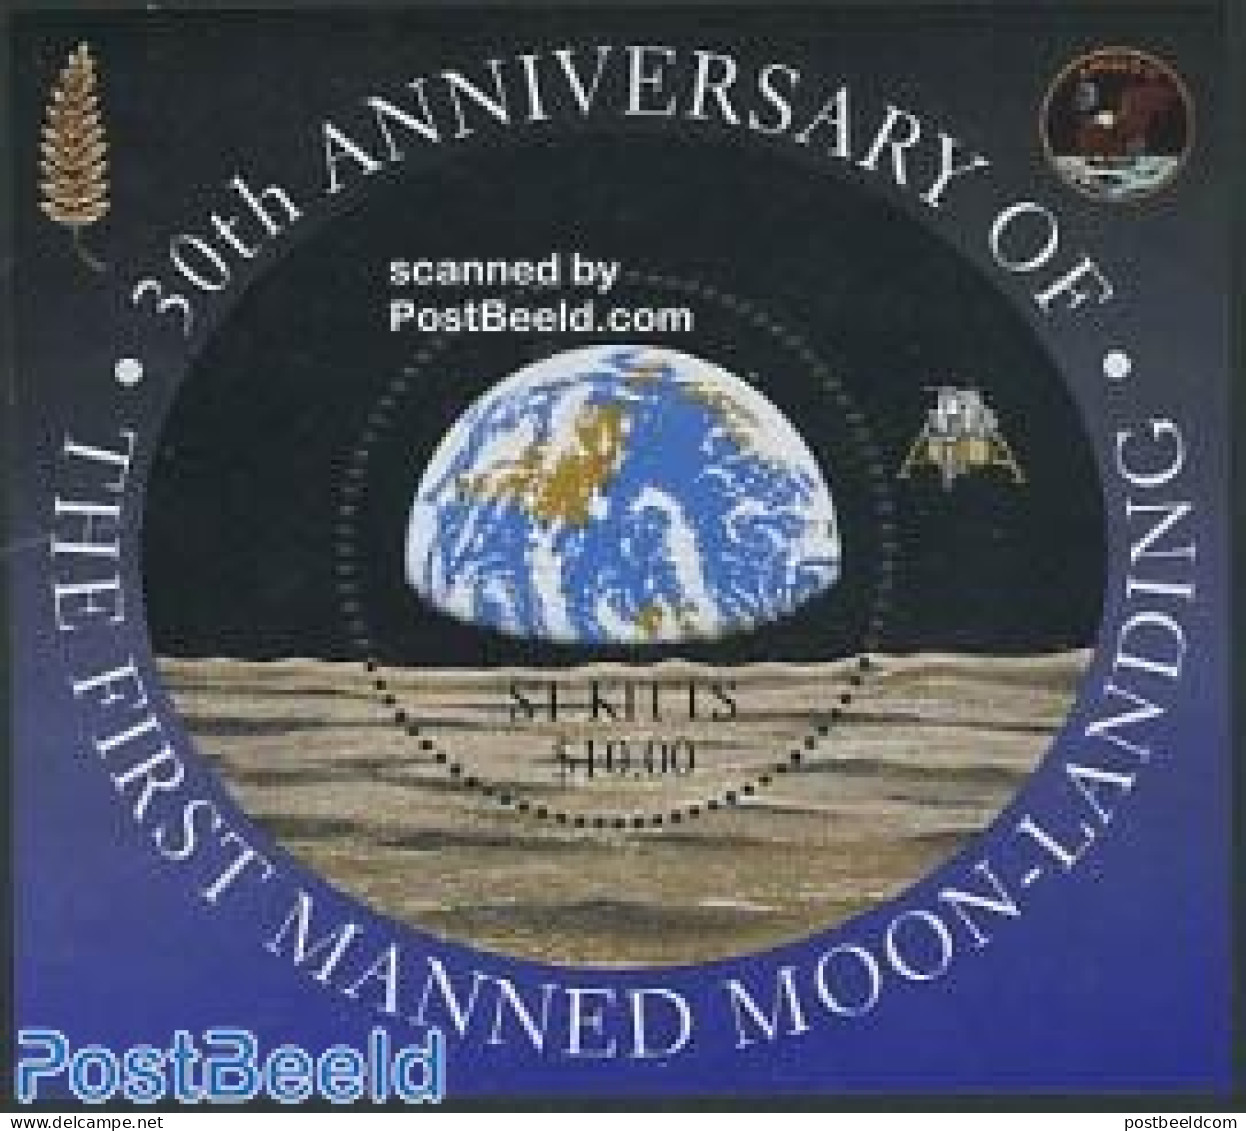 Saint Kitts/Nevis 1999 Moonlanding Anniversary S/s, Mint NH, Transport - Space Exploration - Autres & Non Classés